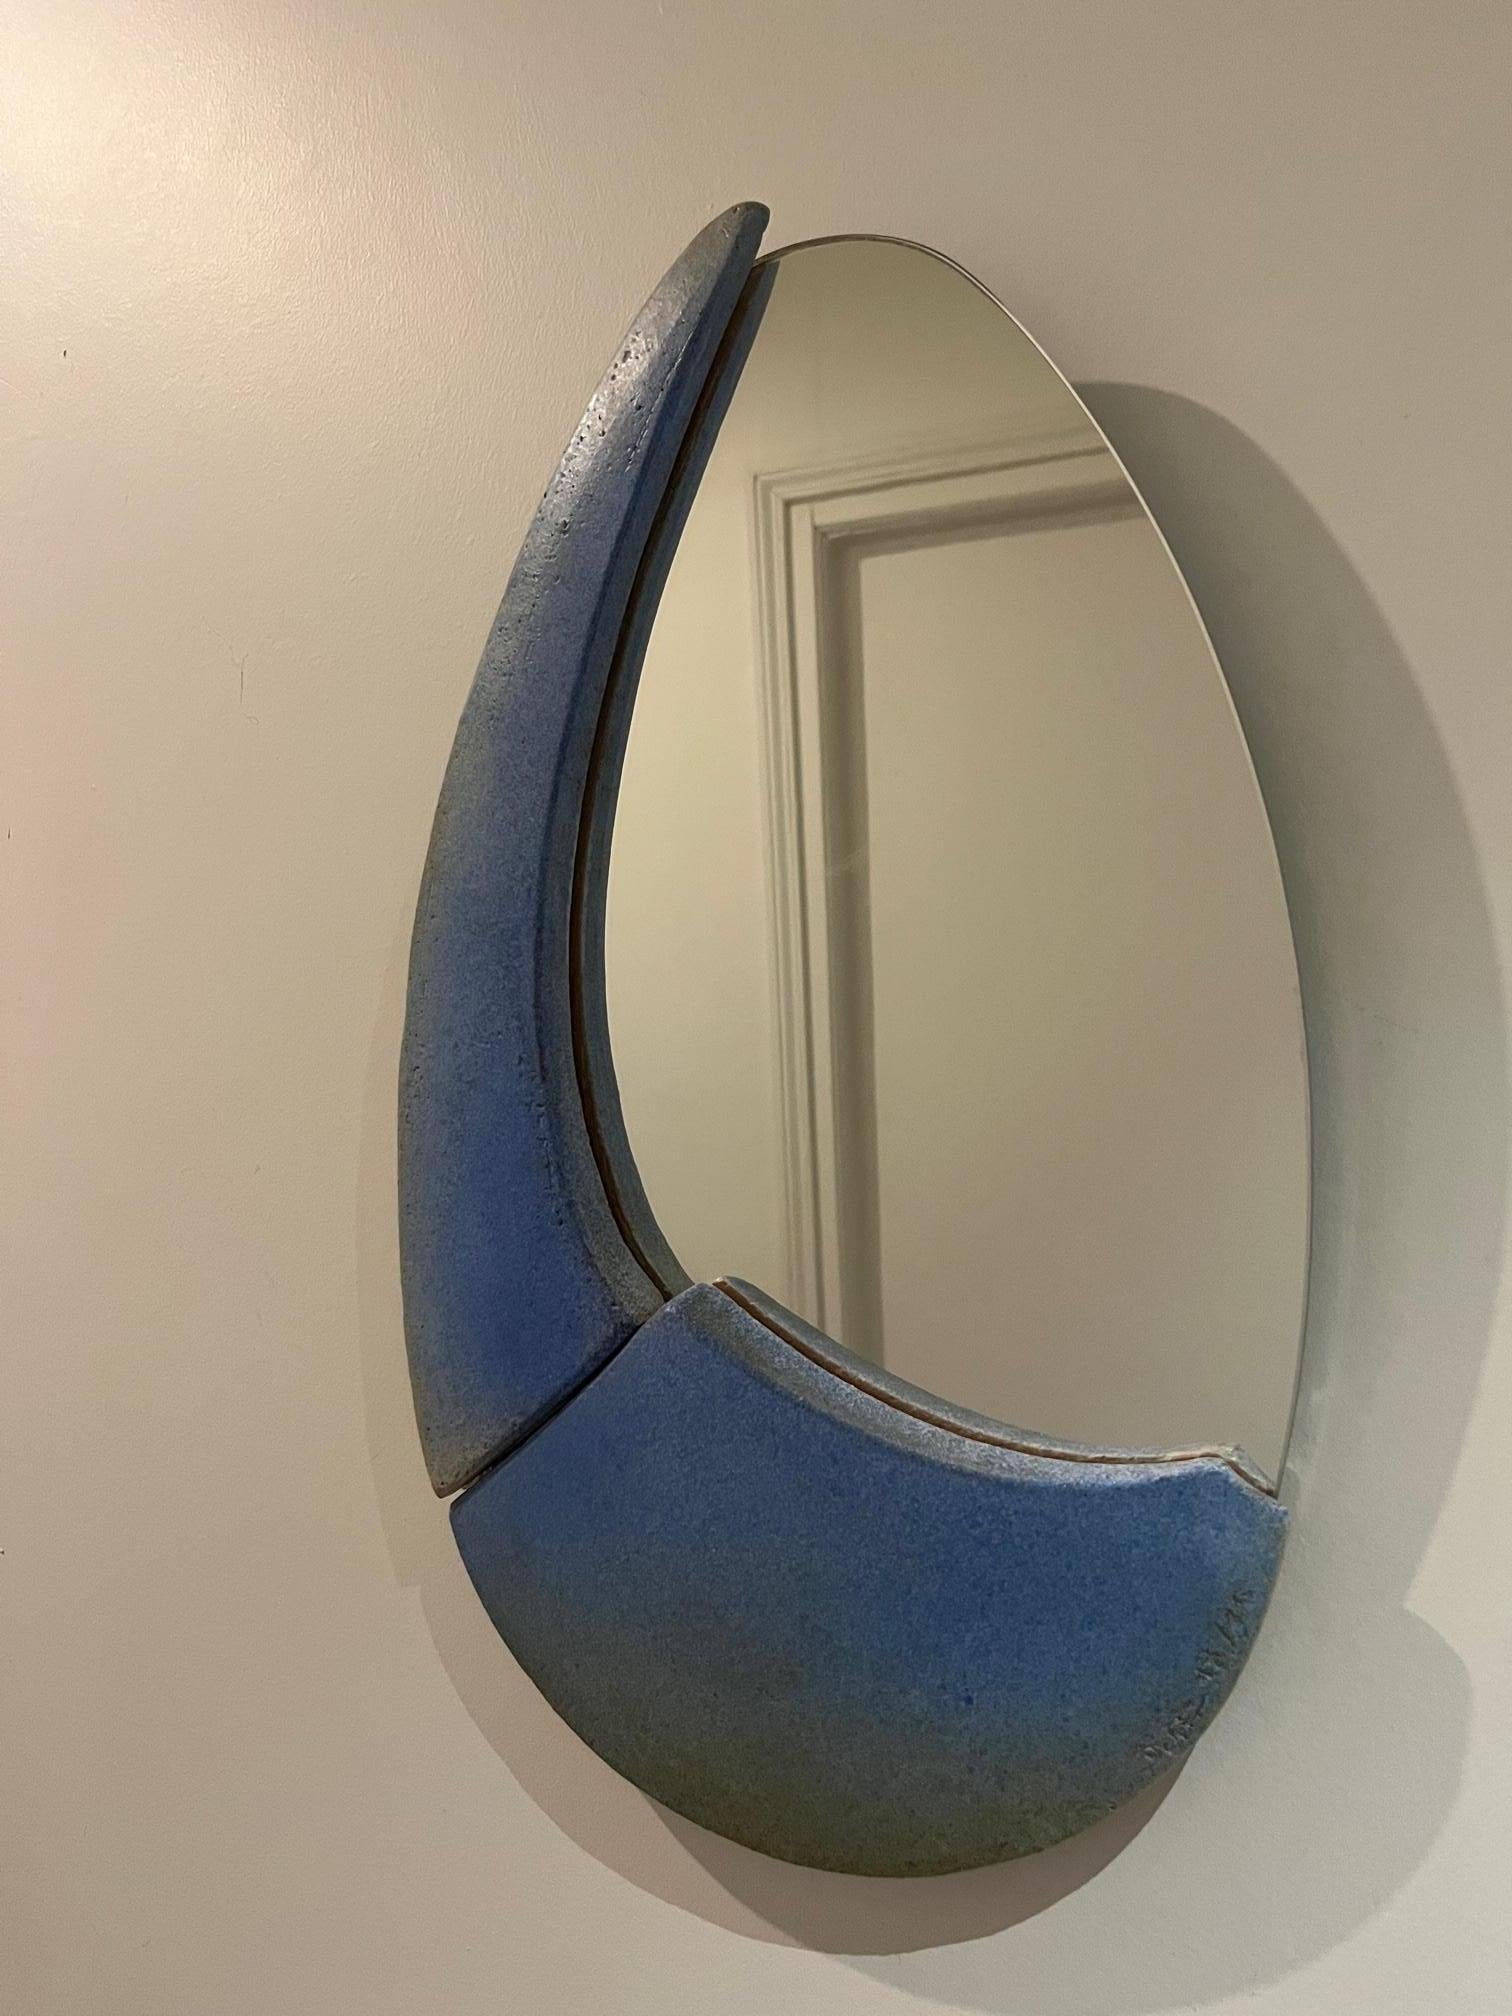 Schöner Keramikspiegel in gutem Vintage-Zustand aus den 1970er Jahren 
Entworfen von Bernard Defer, einem französischen Keramiker aus dem Osten Frankreichs, zeichnet sich sein Werk durch seine Schlichtheit aus.